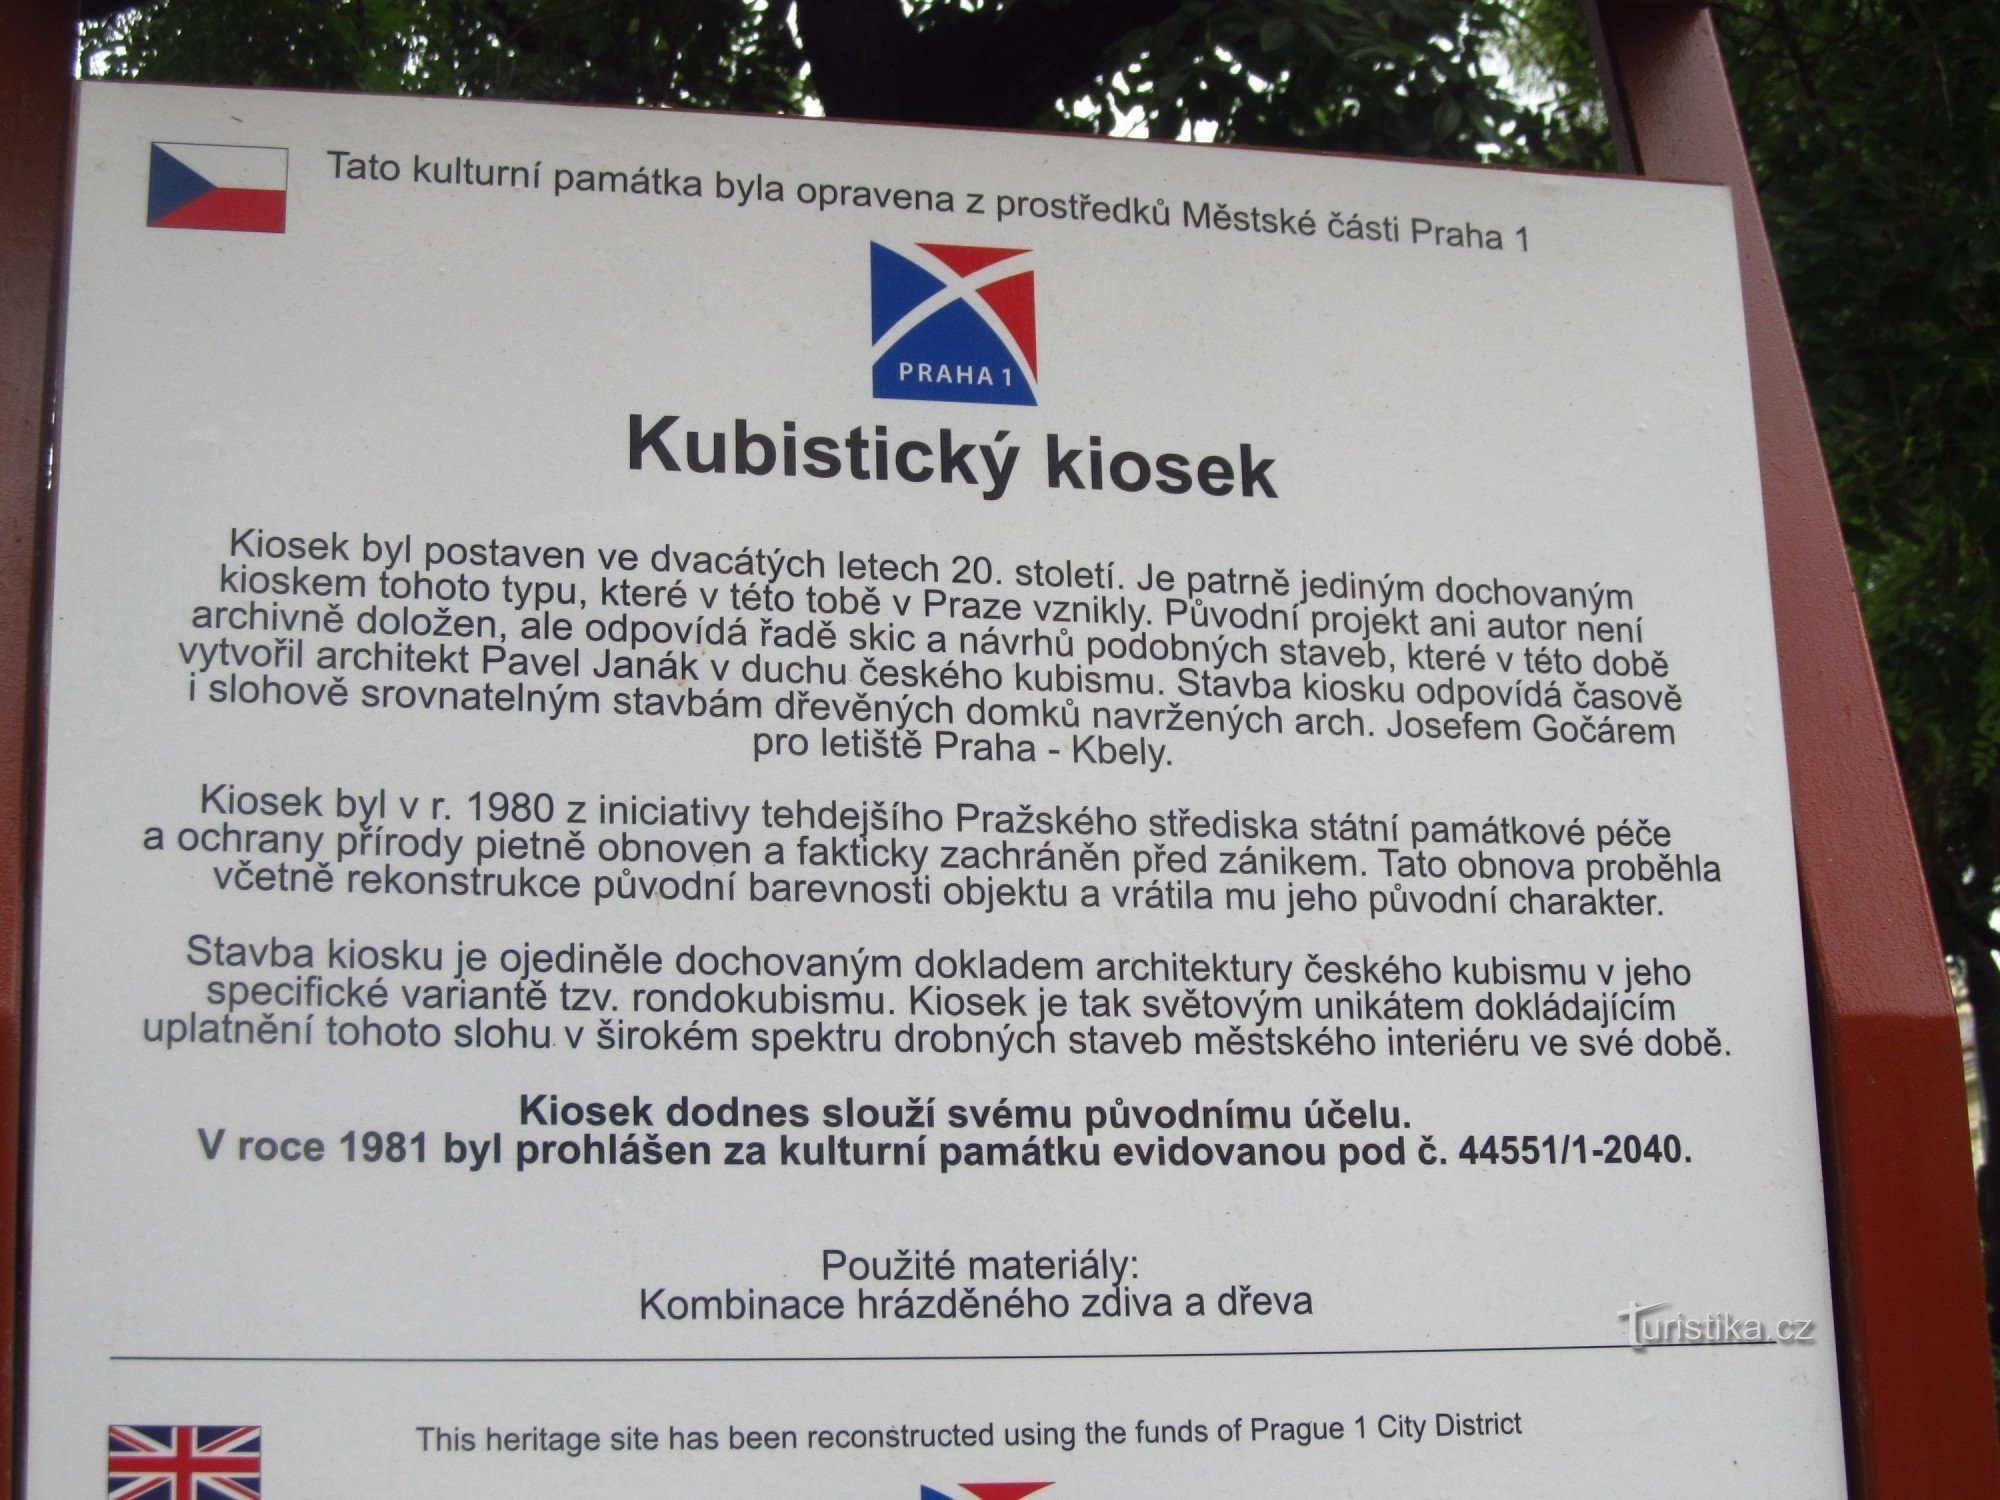 Chioșc cubist din Praga în strada Bolzanova, la marginea grădinilor Vrchlické - panou informativ